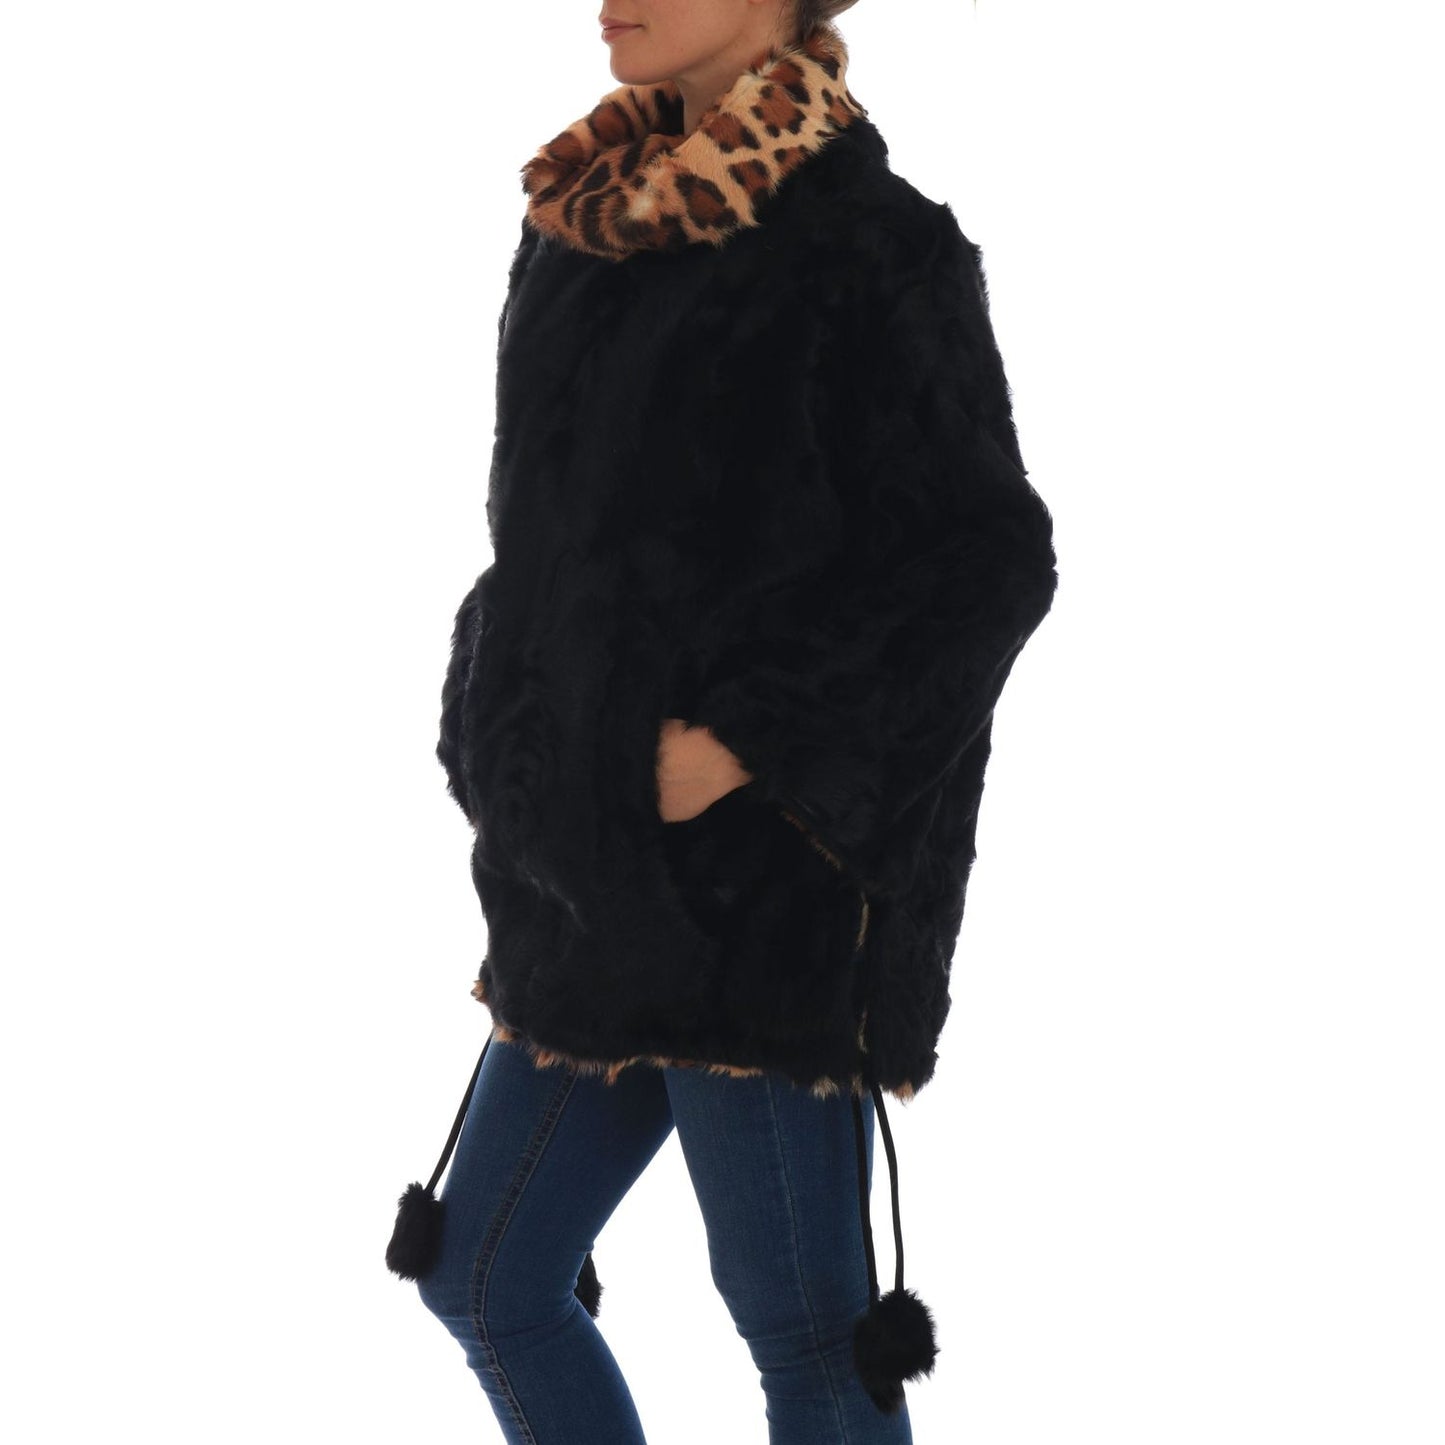 Dolce & Gabbana Elegant Black Lamb Fur Short Coat black-lamb-leopard-print-fur-coat-jacket 654682-black-lamb-leopard-print-fur-coat-jacket-2.jpg